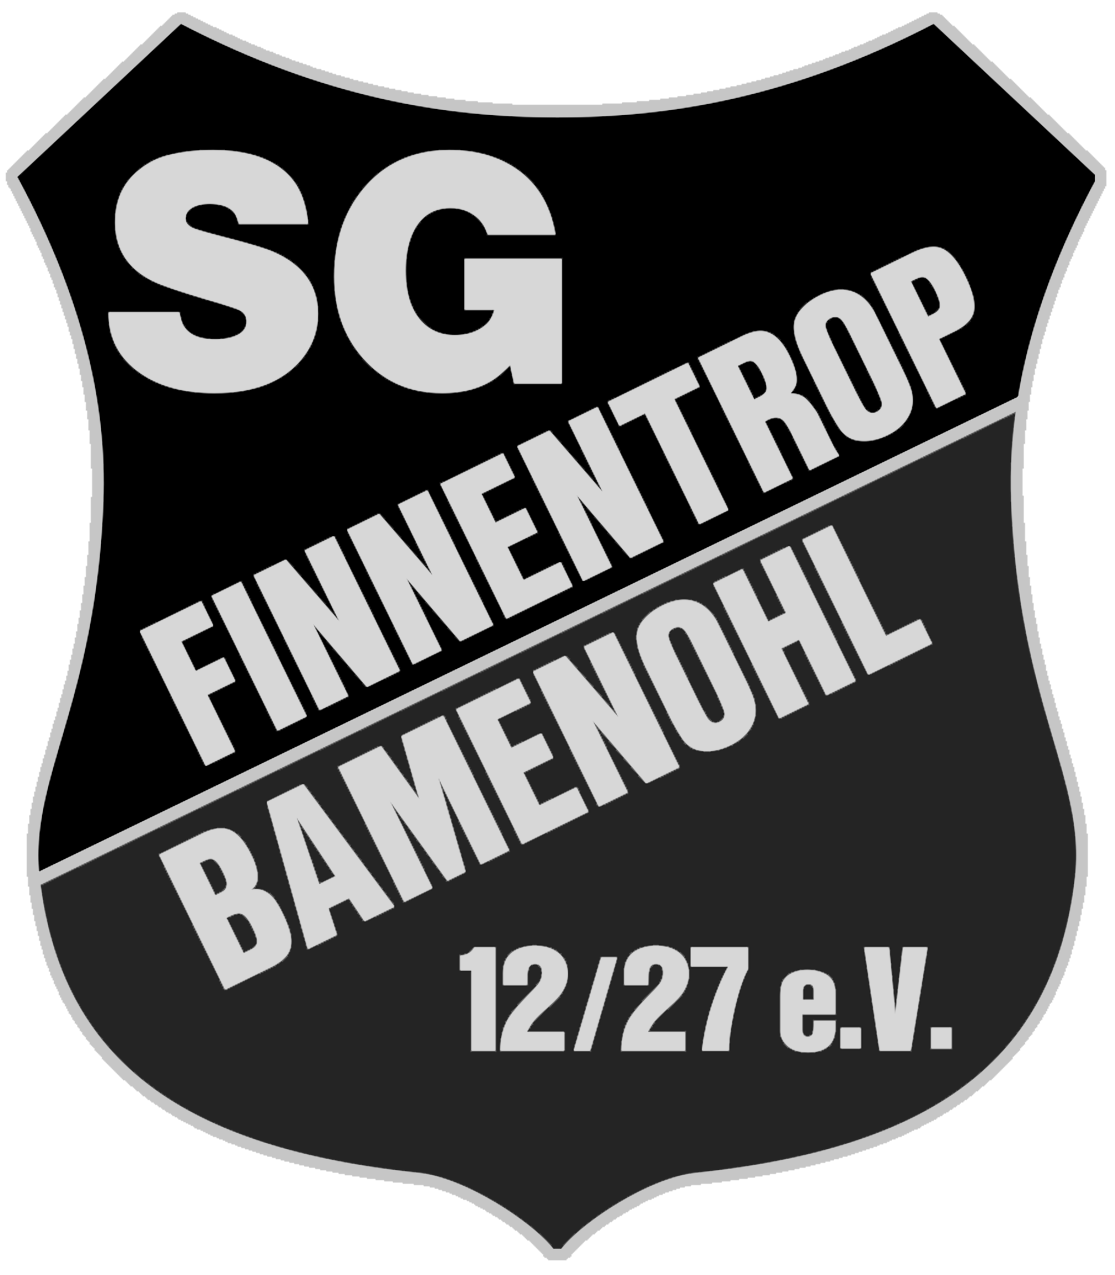 Finnentrop Bamenohl logo